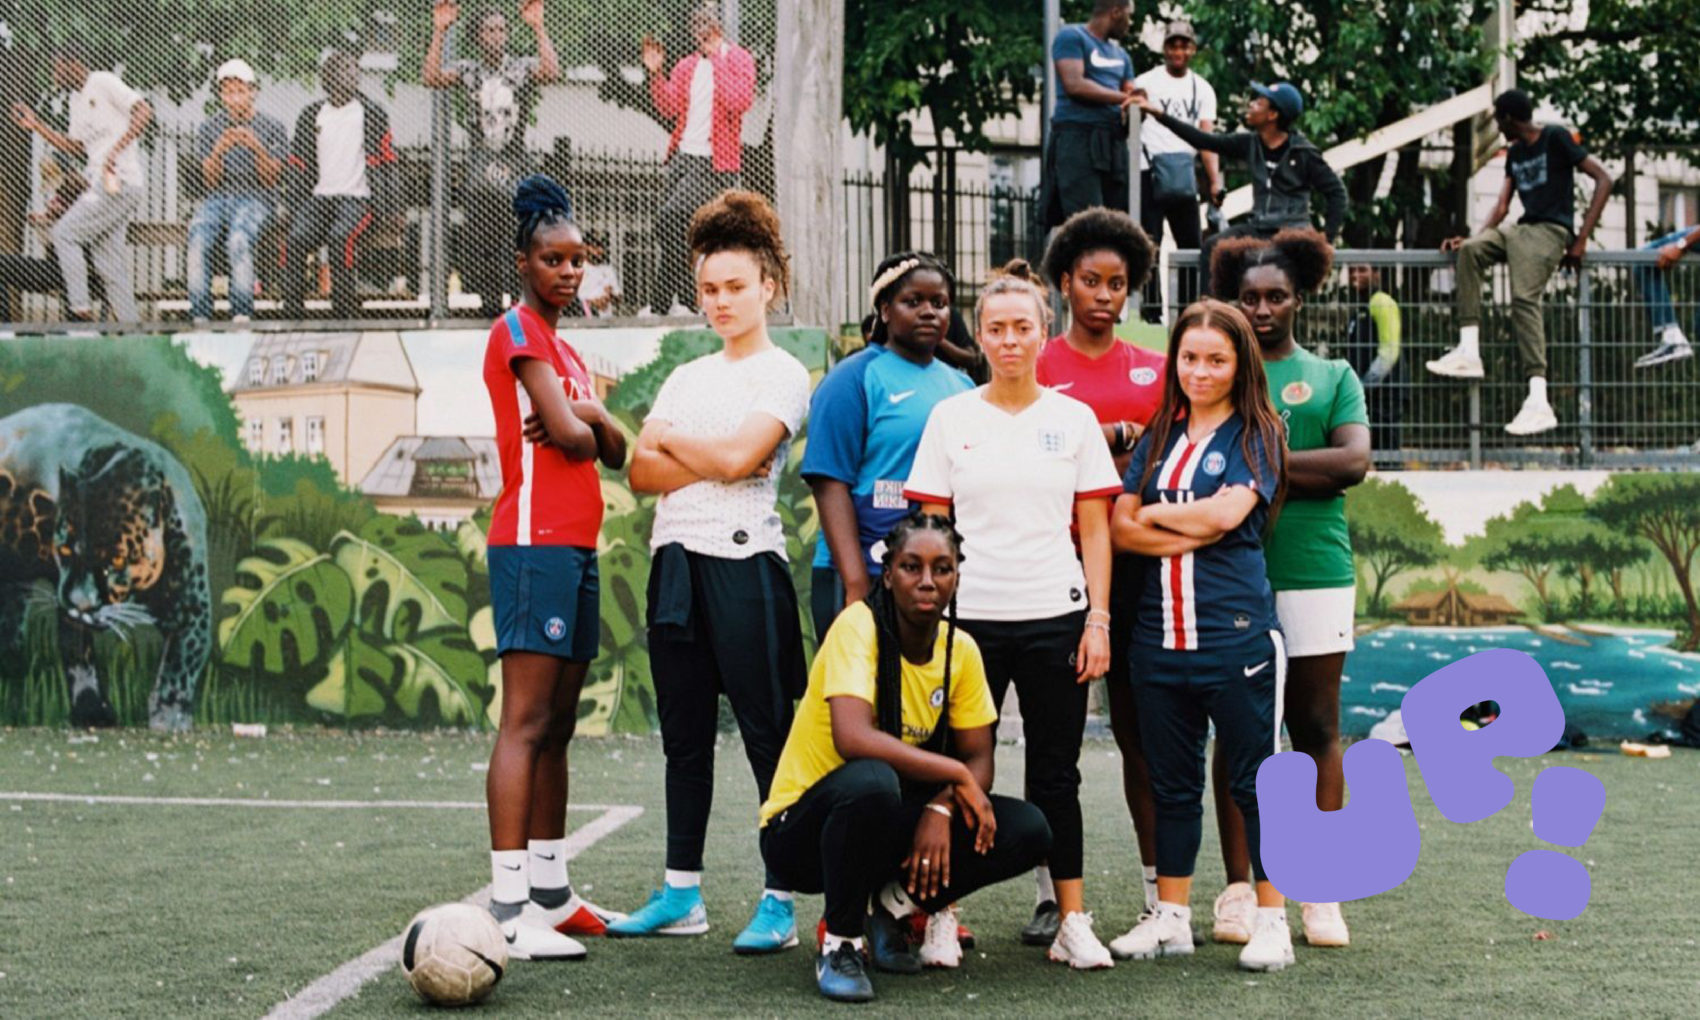 Photo du groupe de jeune femme du film Footeuses, en groupe sur un terrain de foot